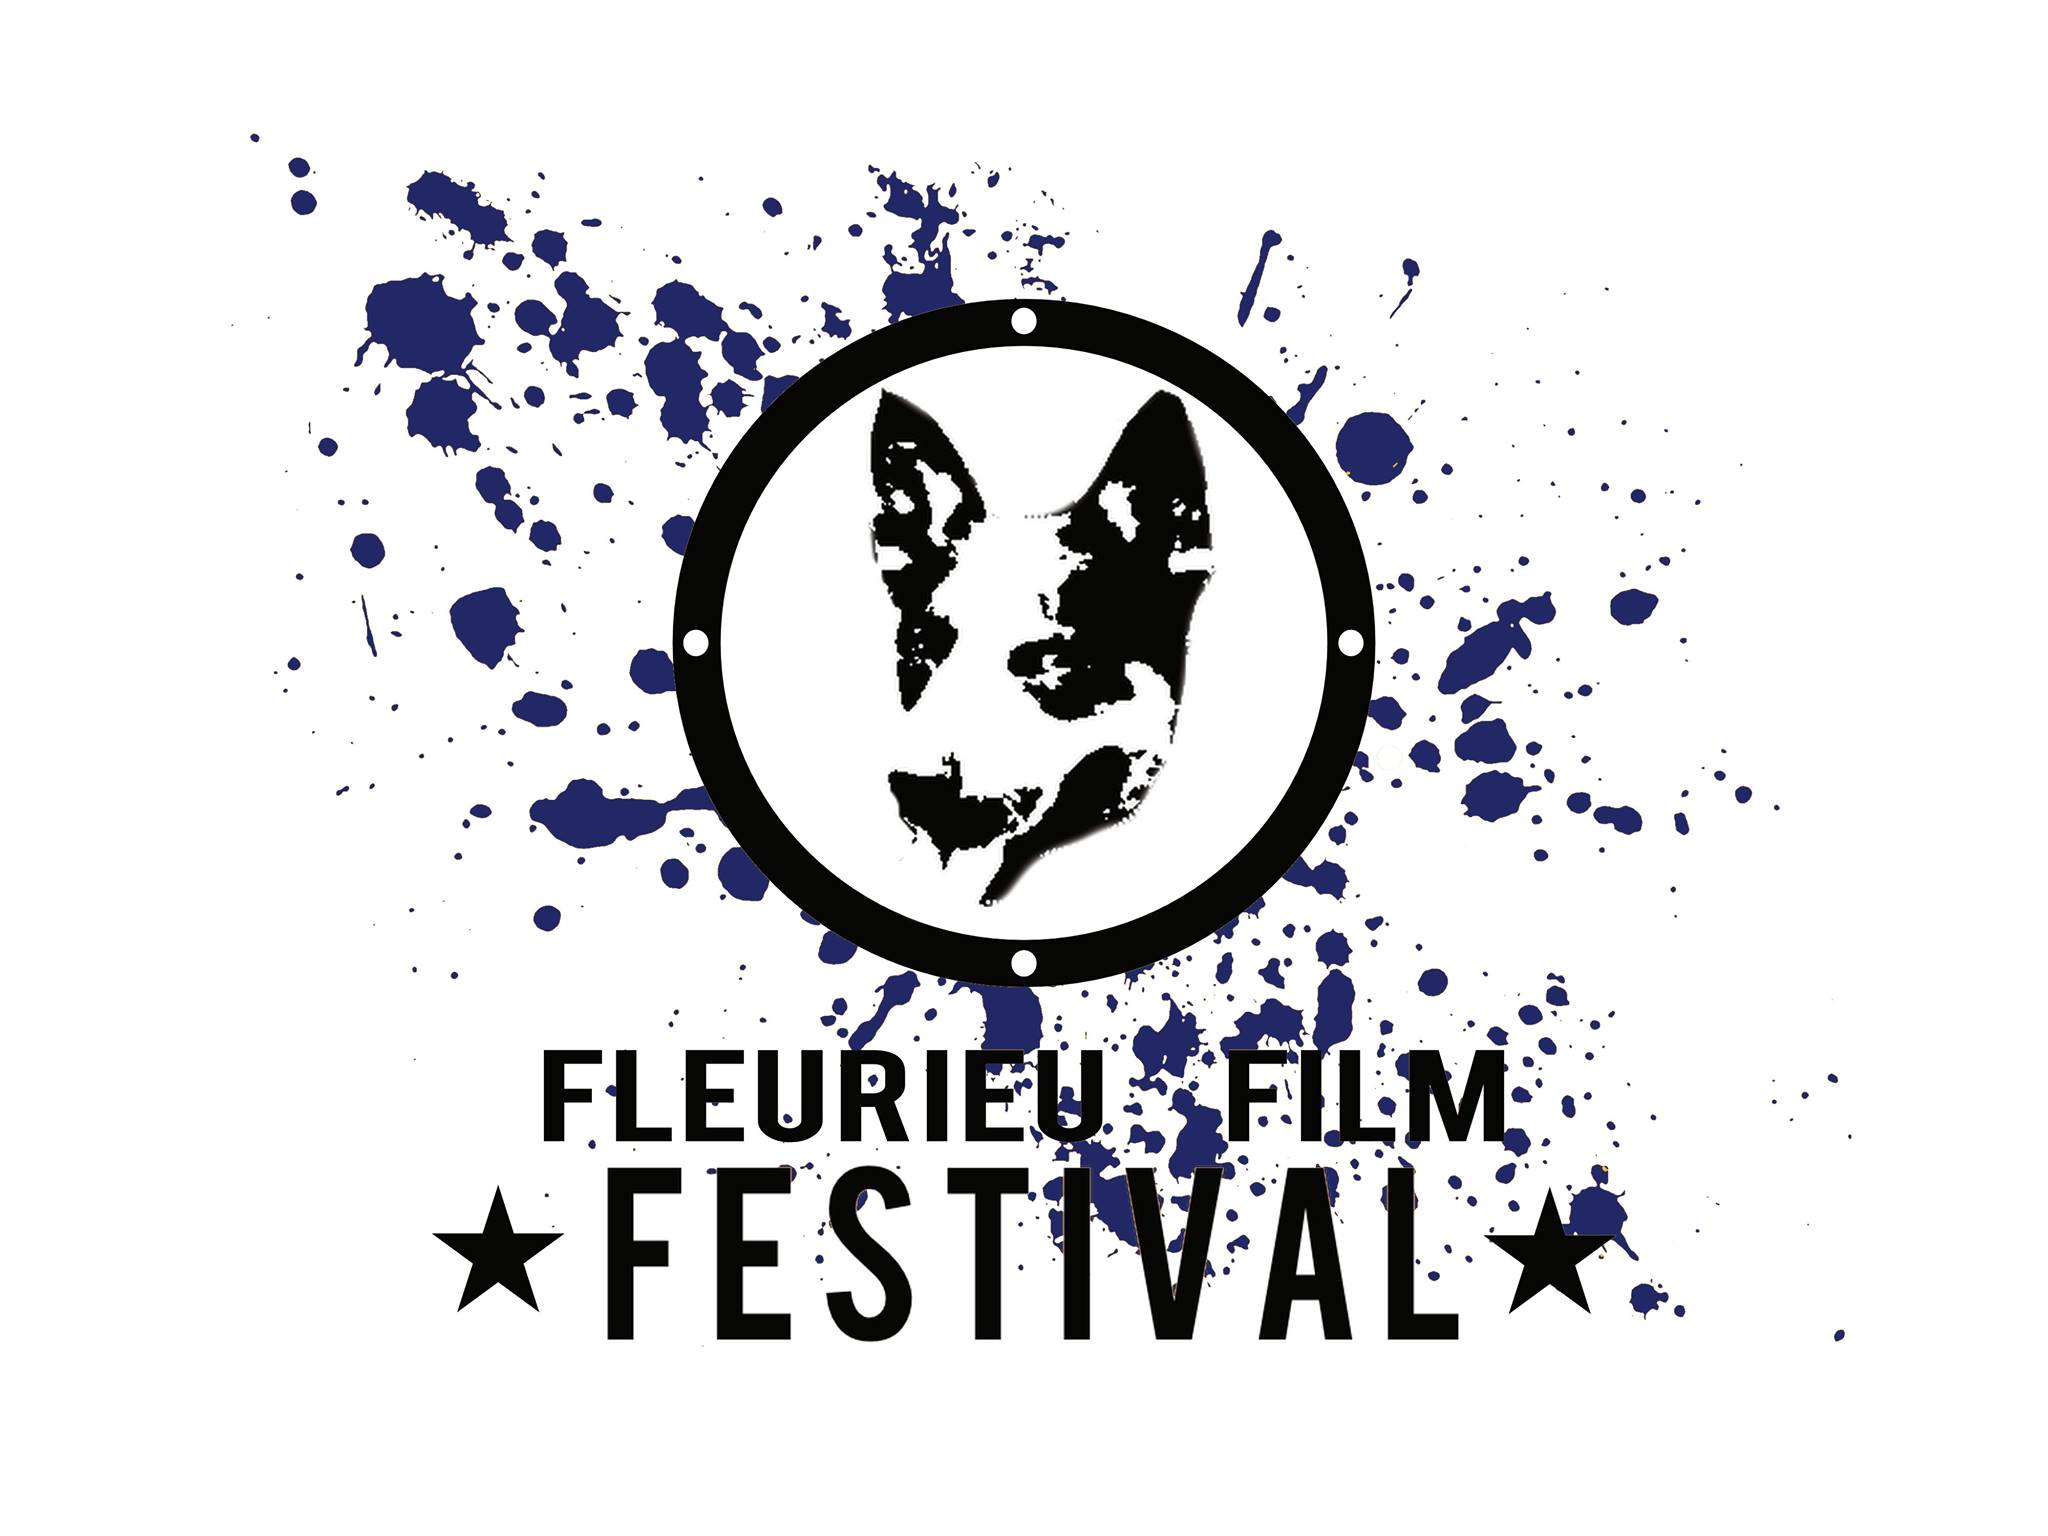 Fleurieu Film Festival - Broome Tourism